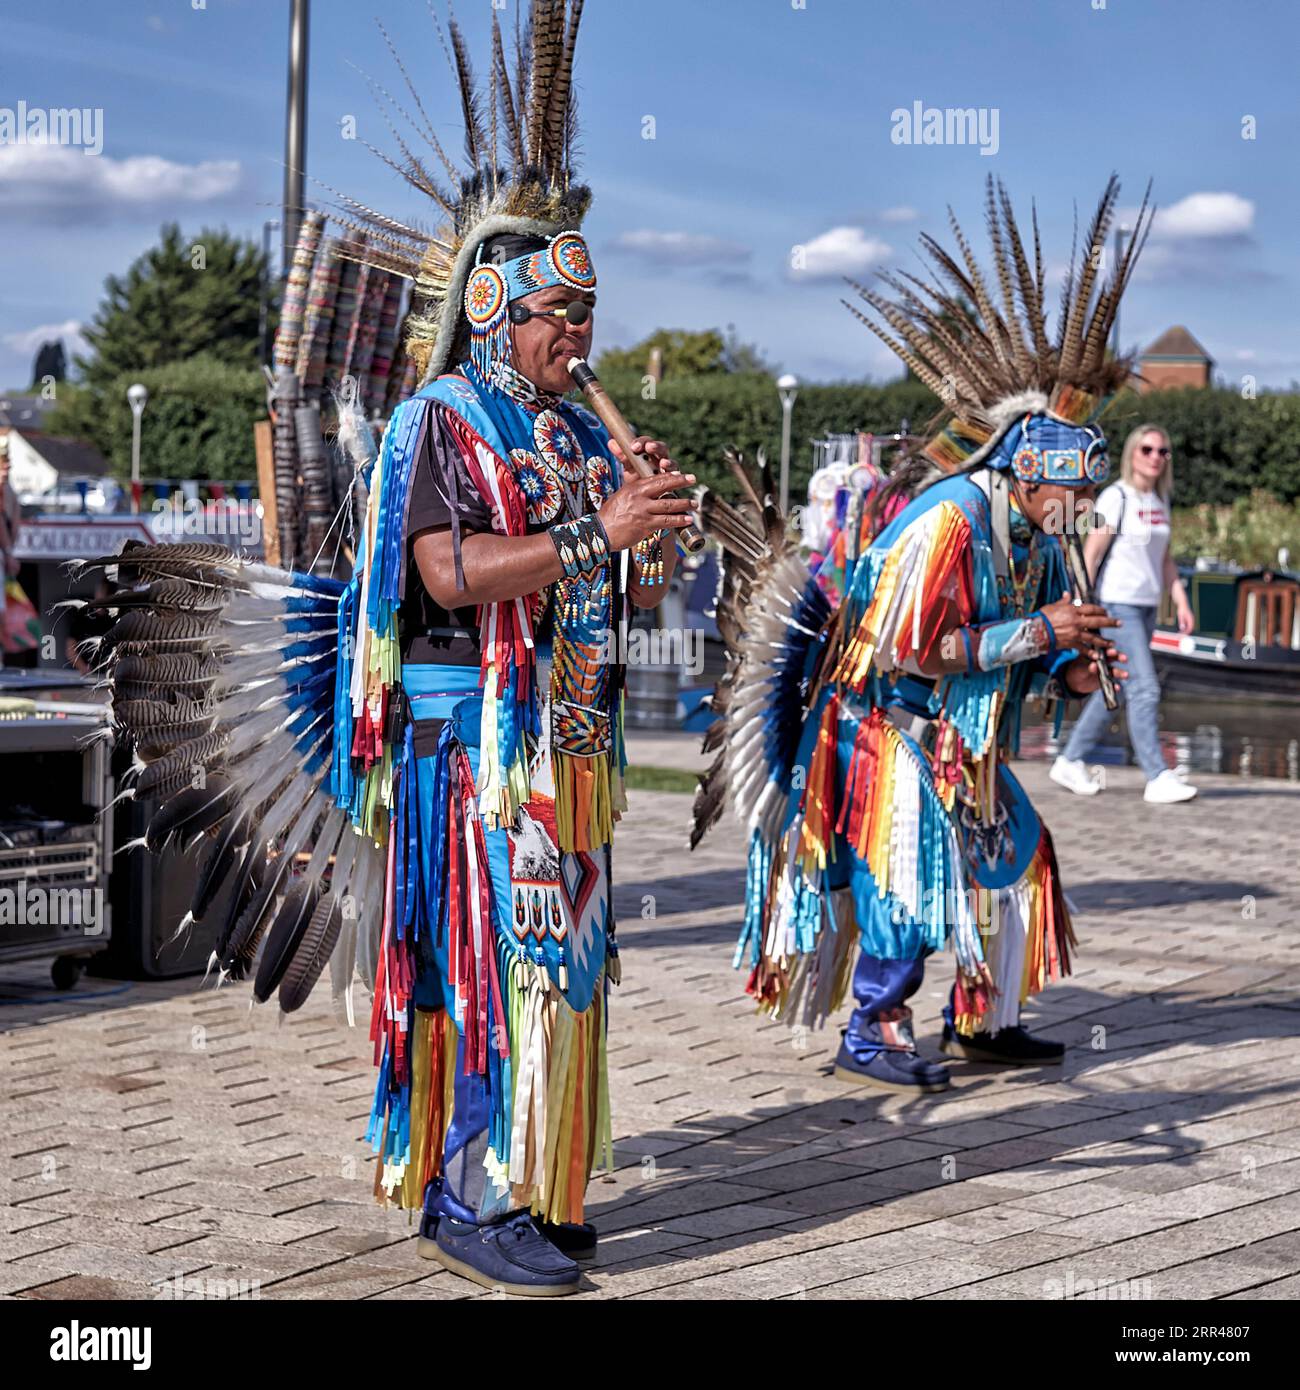 Costume traditionnel du peuple de la tribu Quichua de l'Équateur lors d'un spectacle de danse à Stratford upon Avon Angleterre. Descendants de l'Empire Inca Banque D'Images